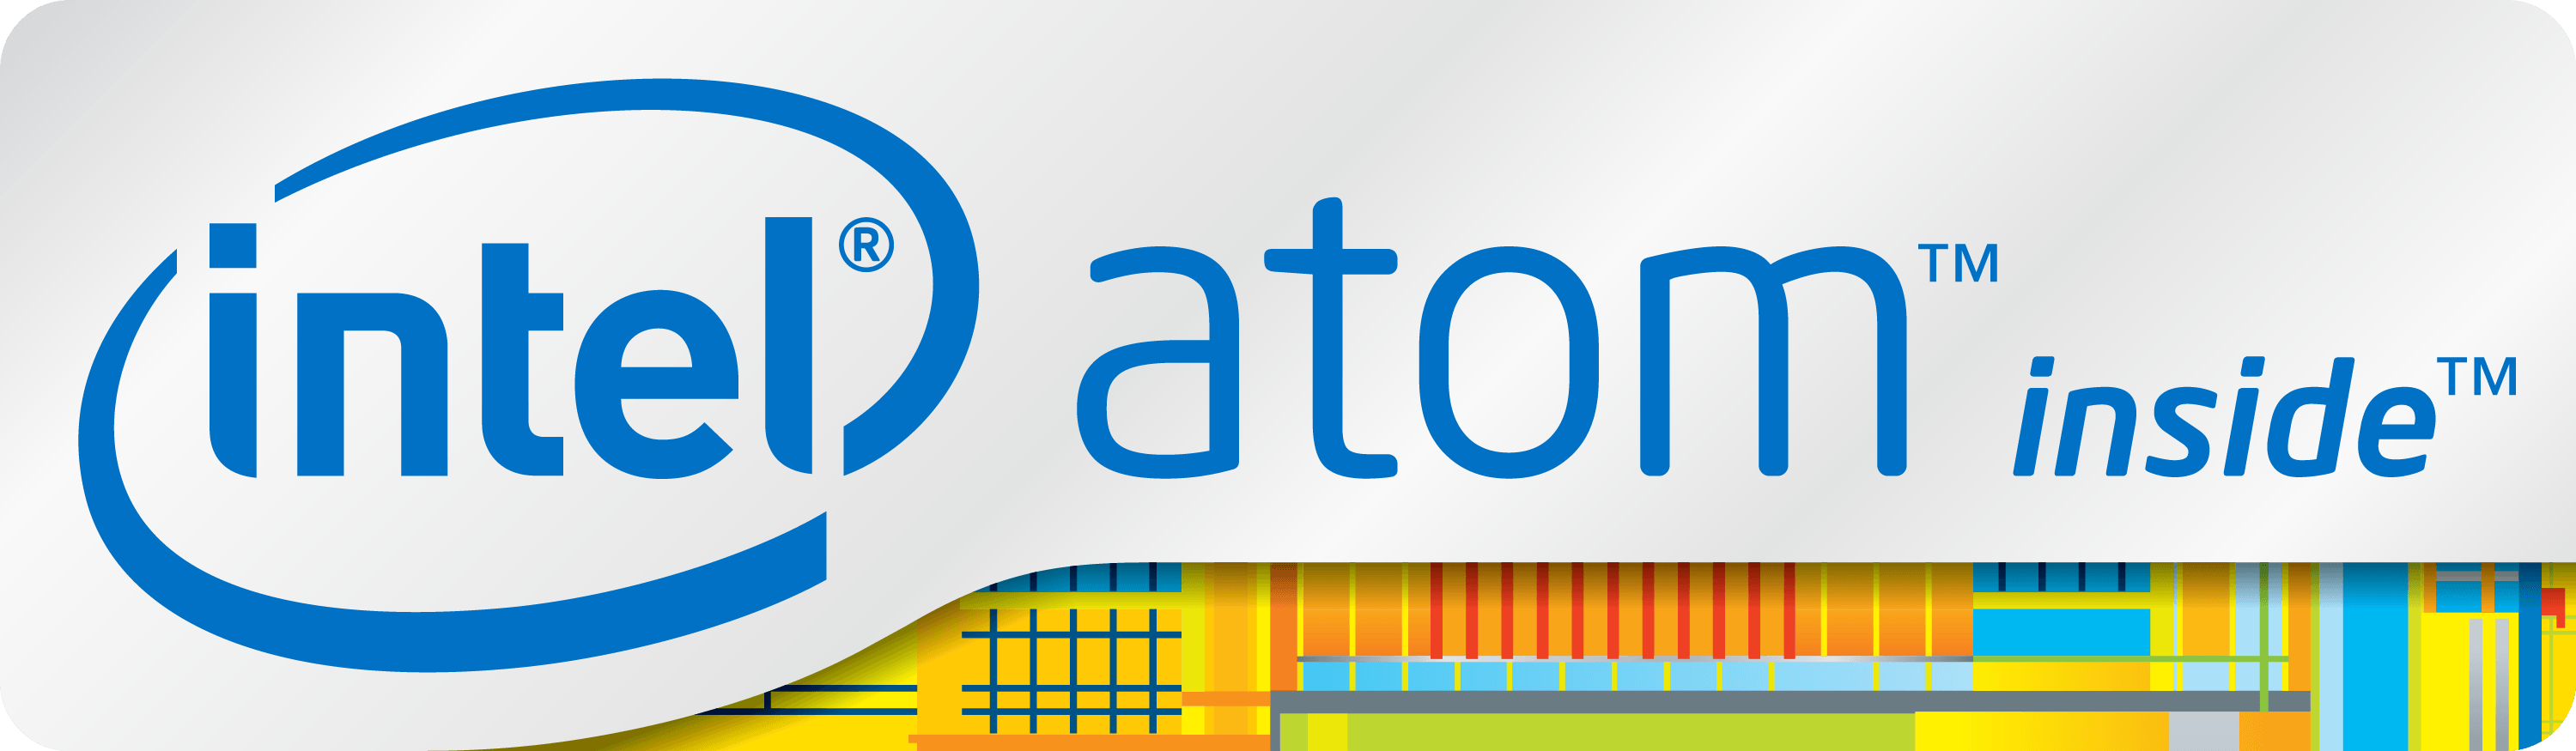 Latest Intel Inside Logo - Intel Atom | Logopedia | FANDOM powered by Wikia